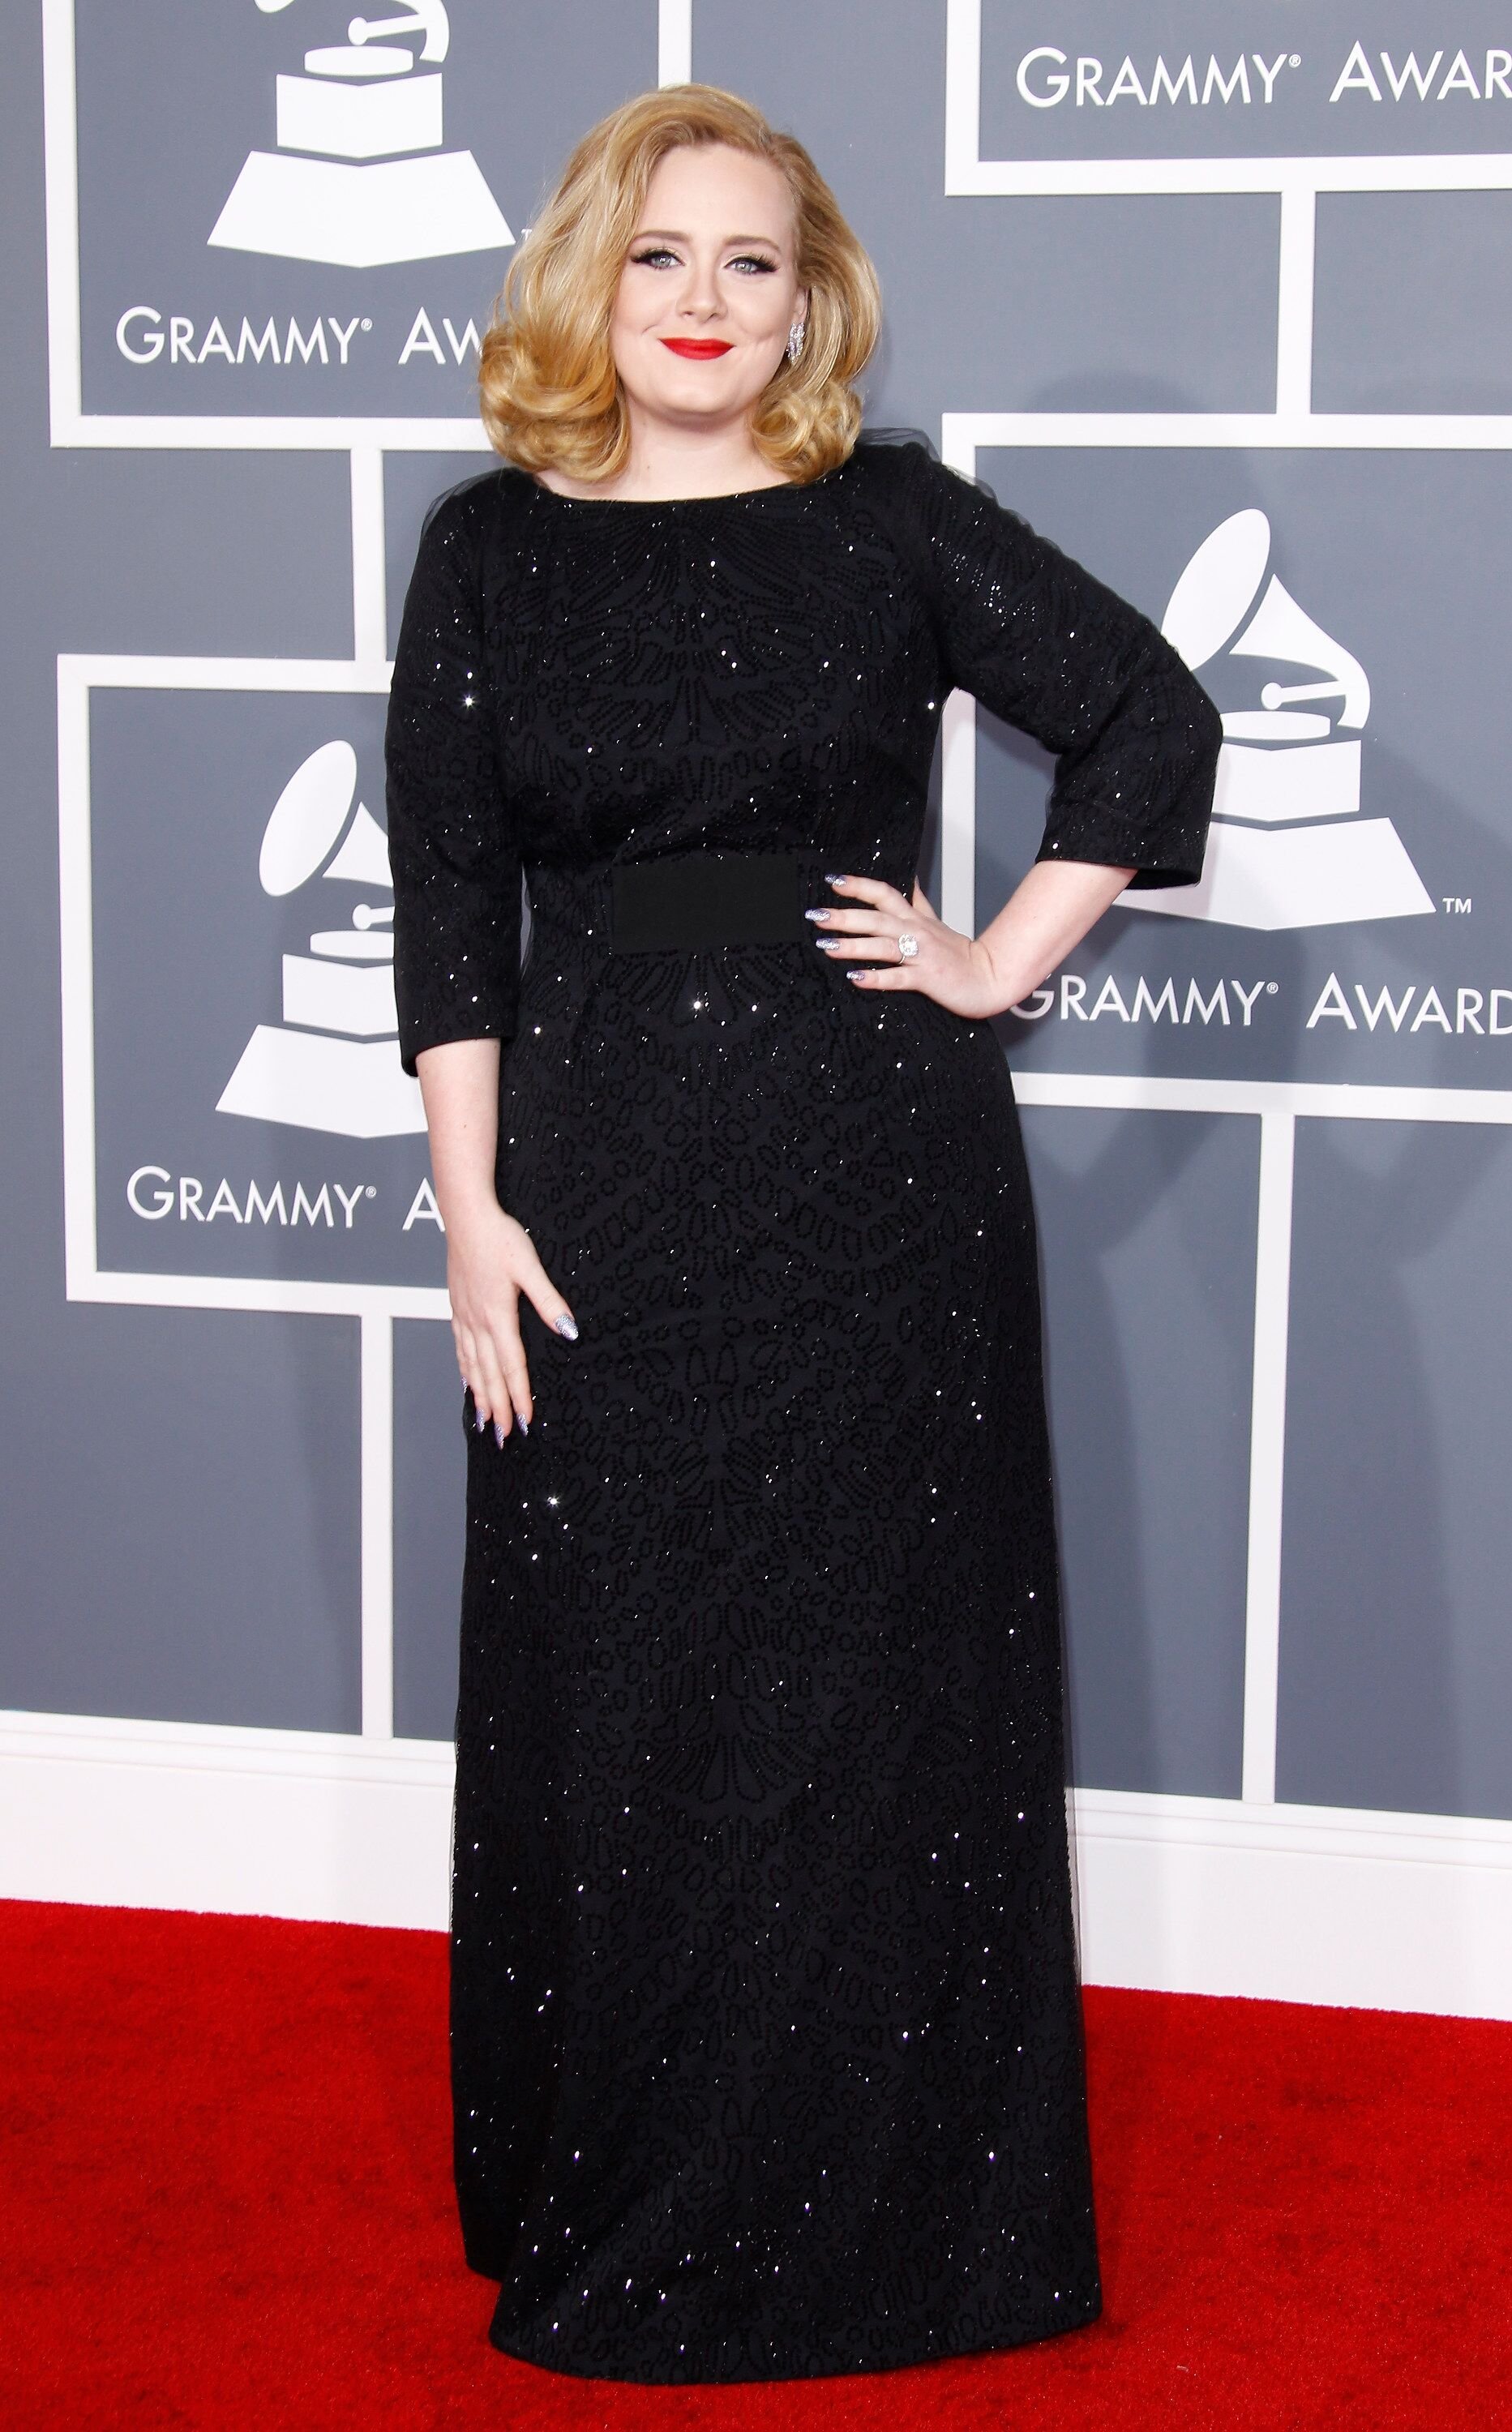 Adele nimmt an den 54. jährlichen GRAMMY-Auszeichnungen teil, die am 12. Februar 2012 im Staples Center stattfinden. | Quelle: Getty Images